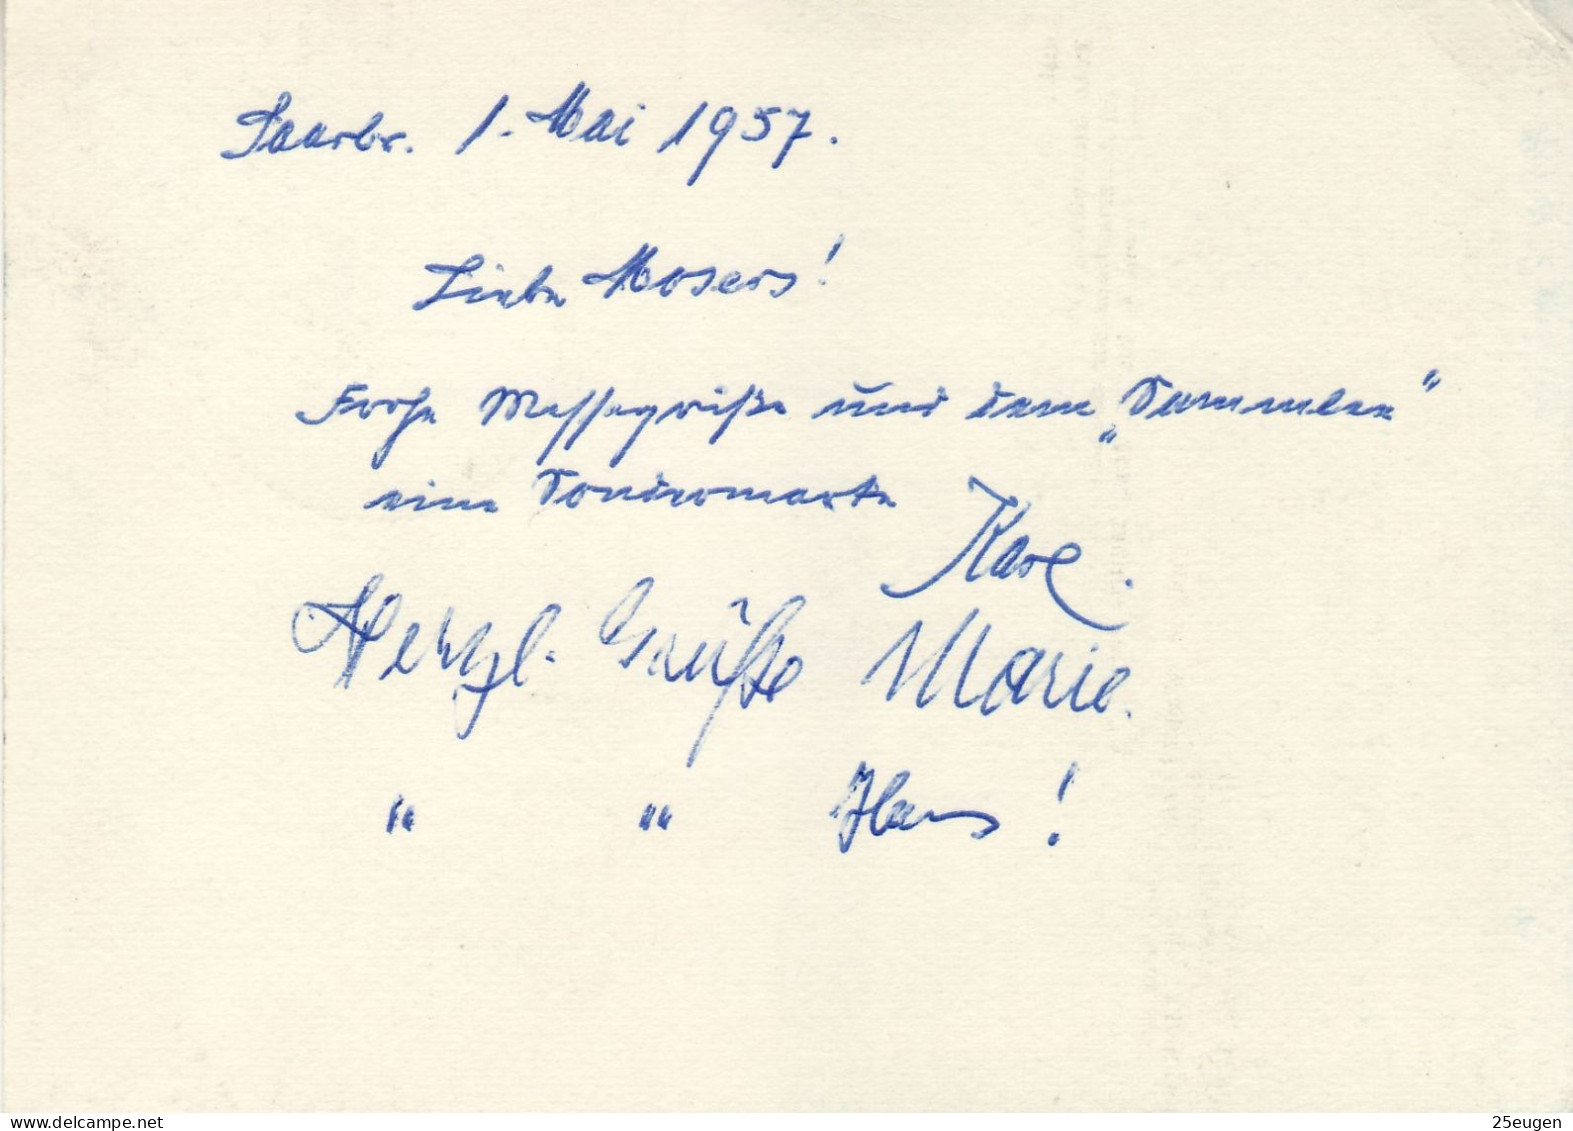 SAAR 1957  POSTCARD SENT FROM SAARBRUECKEN TO STUTTGART - Lettres & Documents